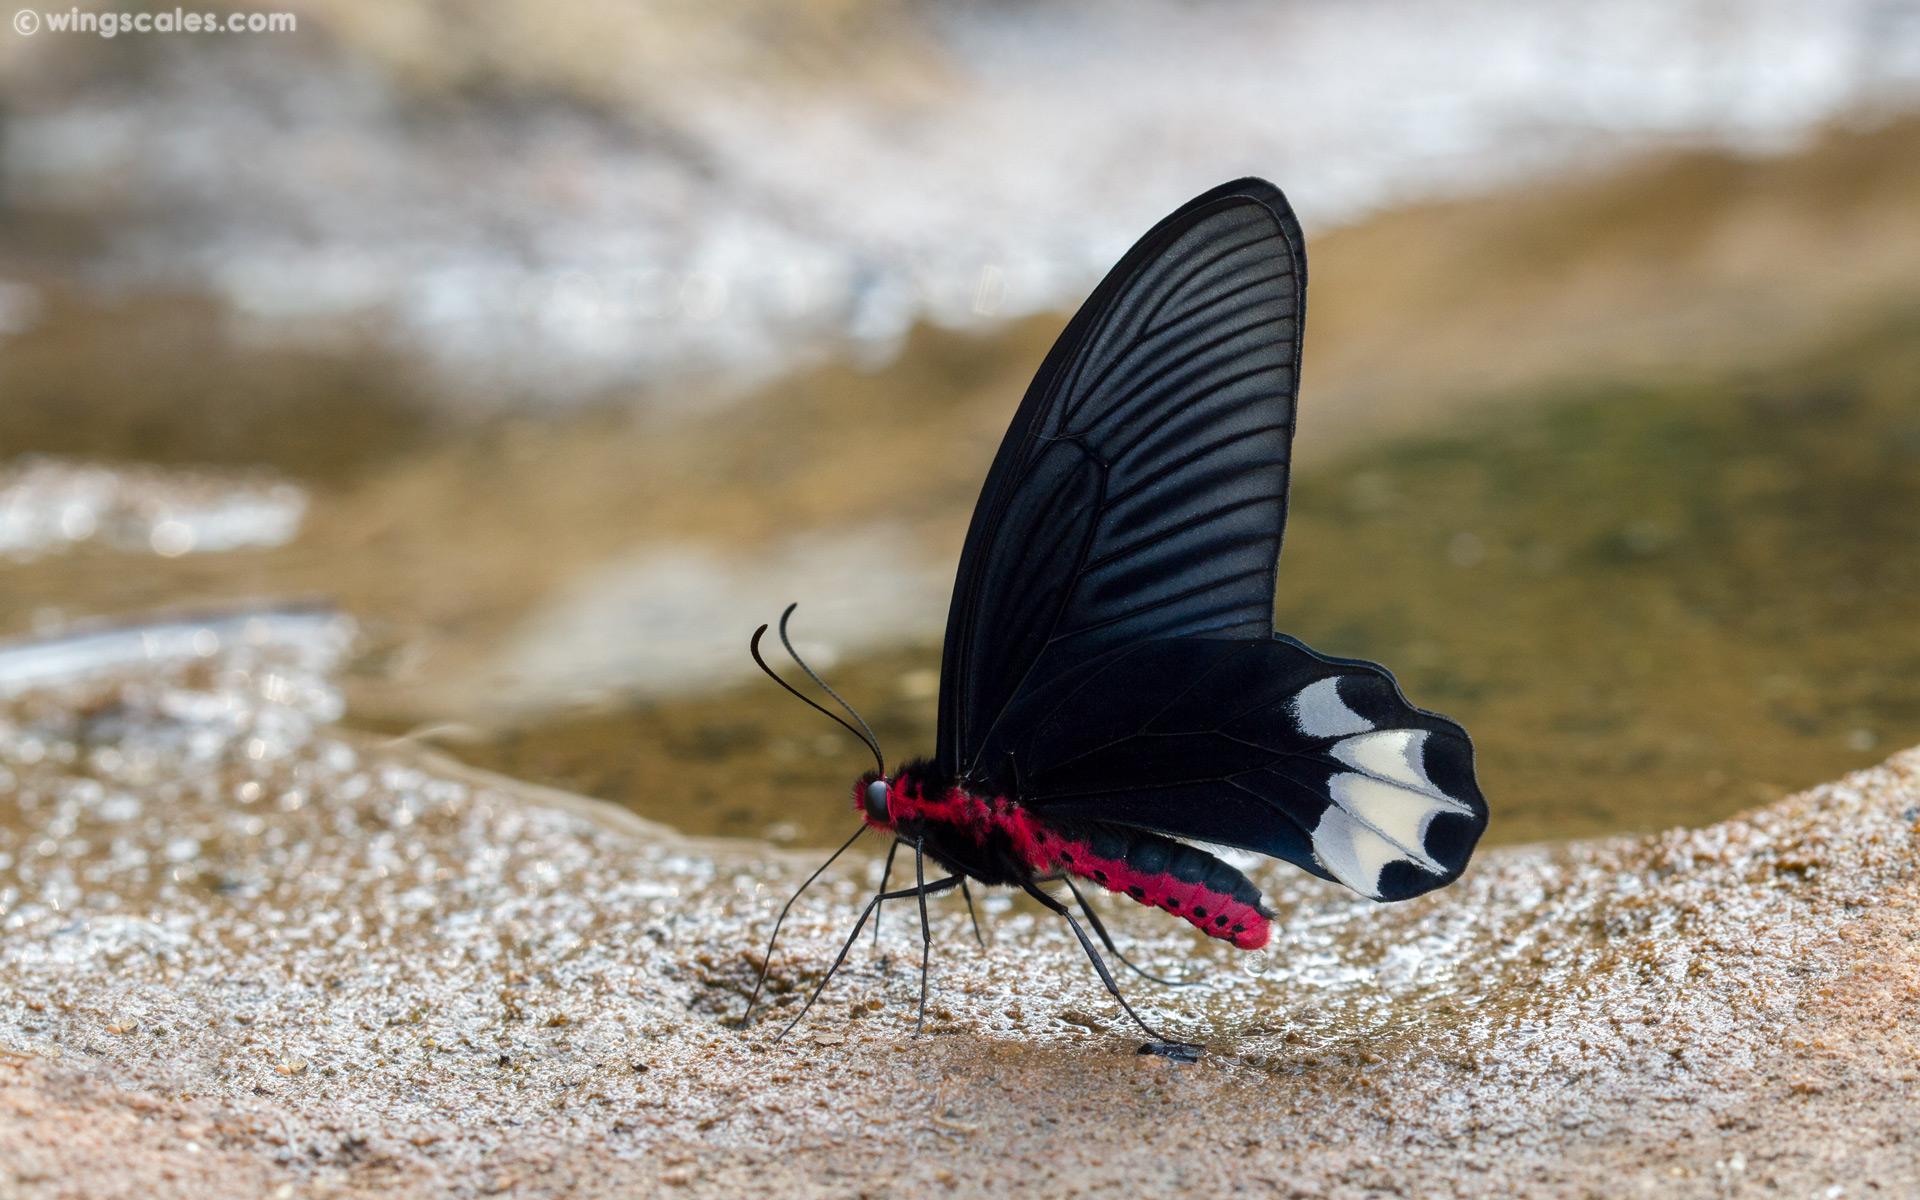 Atrophaneura astorion zaleucus : Burmese Batwing / ผีเสื้อปีกค้างคาวพม่า